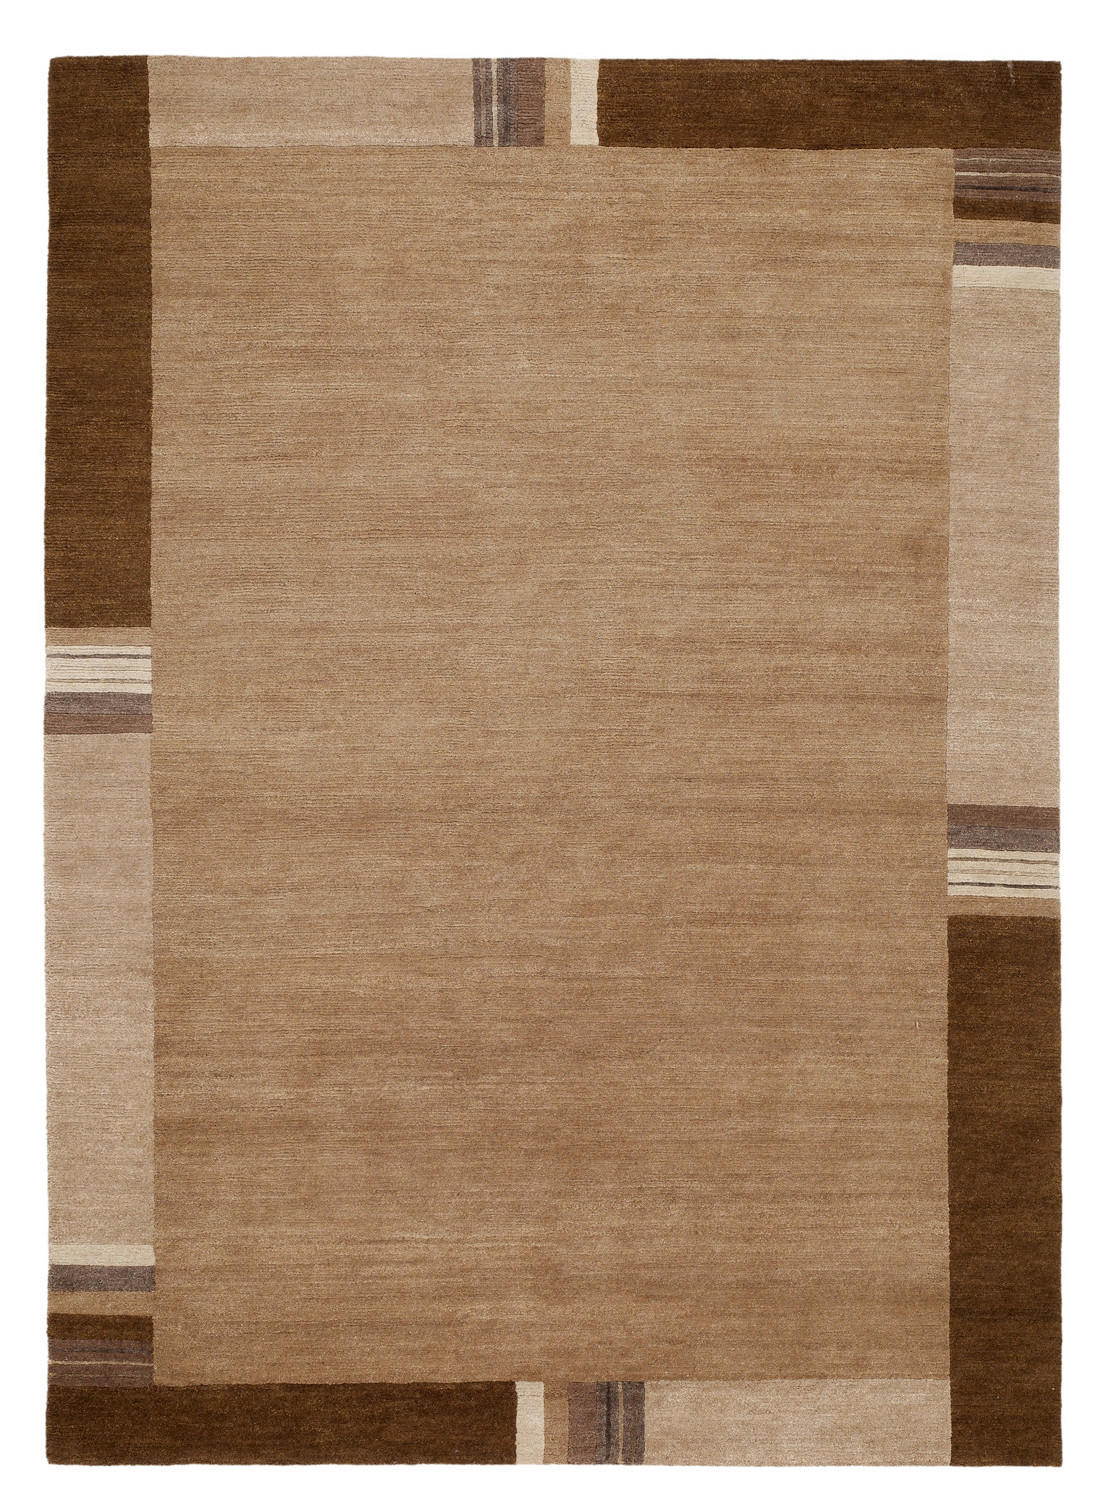 Wollteppich  70/140 cm  Braun   - Braun, Basics, Textil (70/140cm) - Cazaris